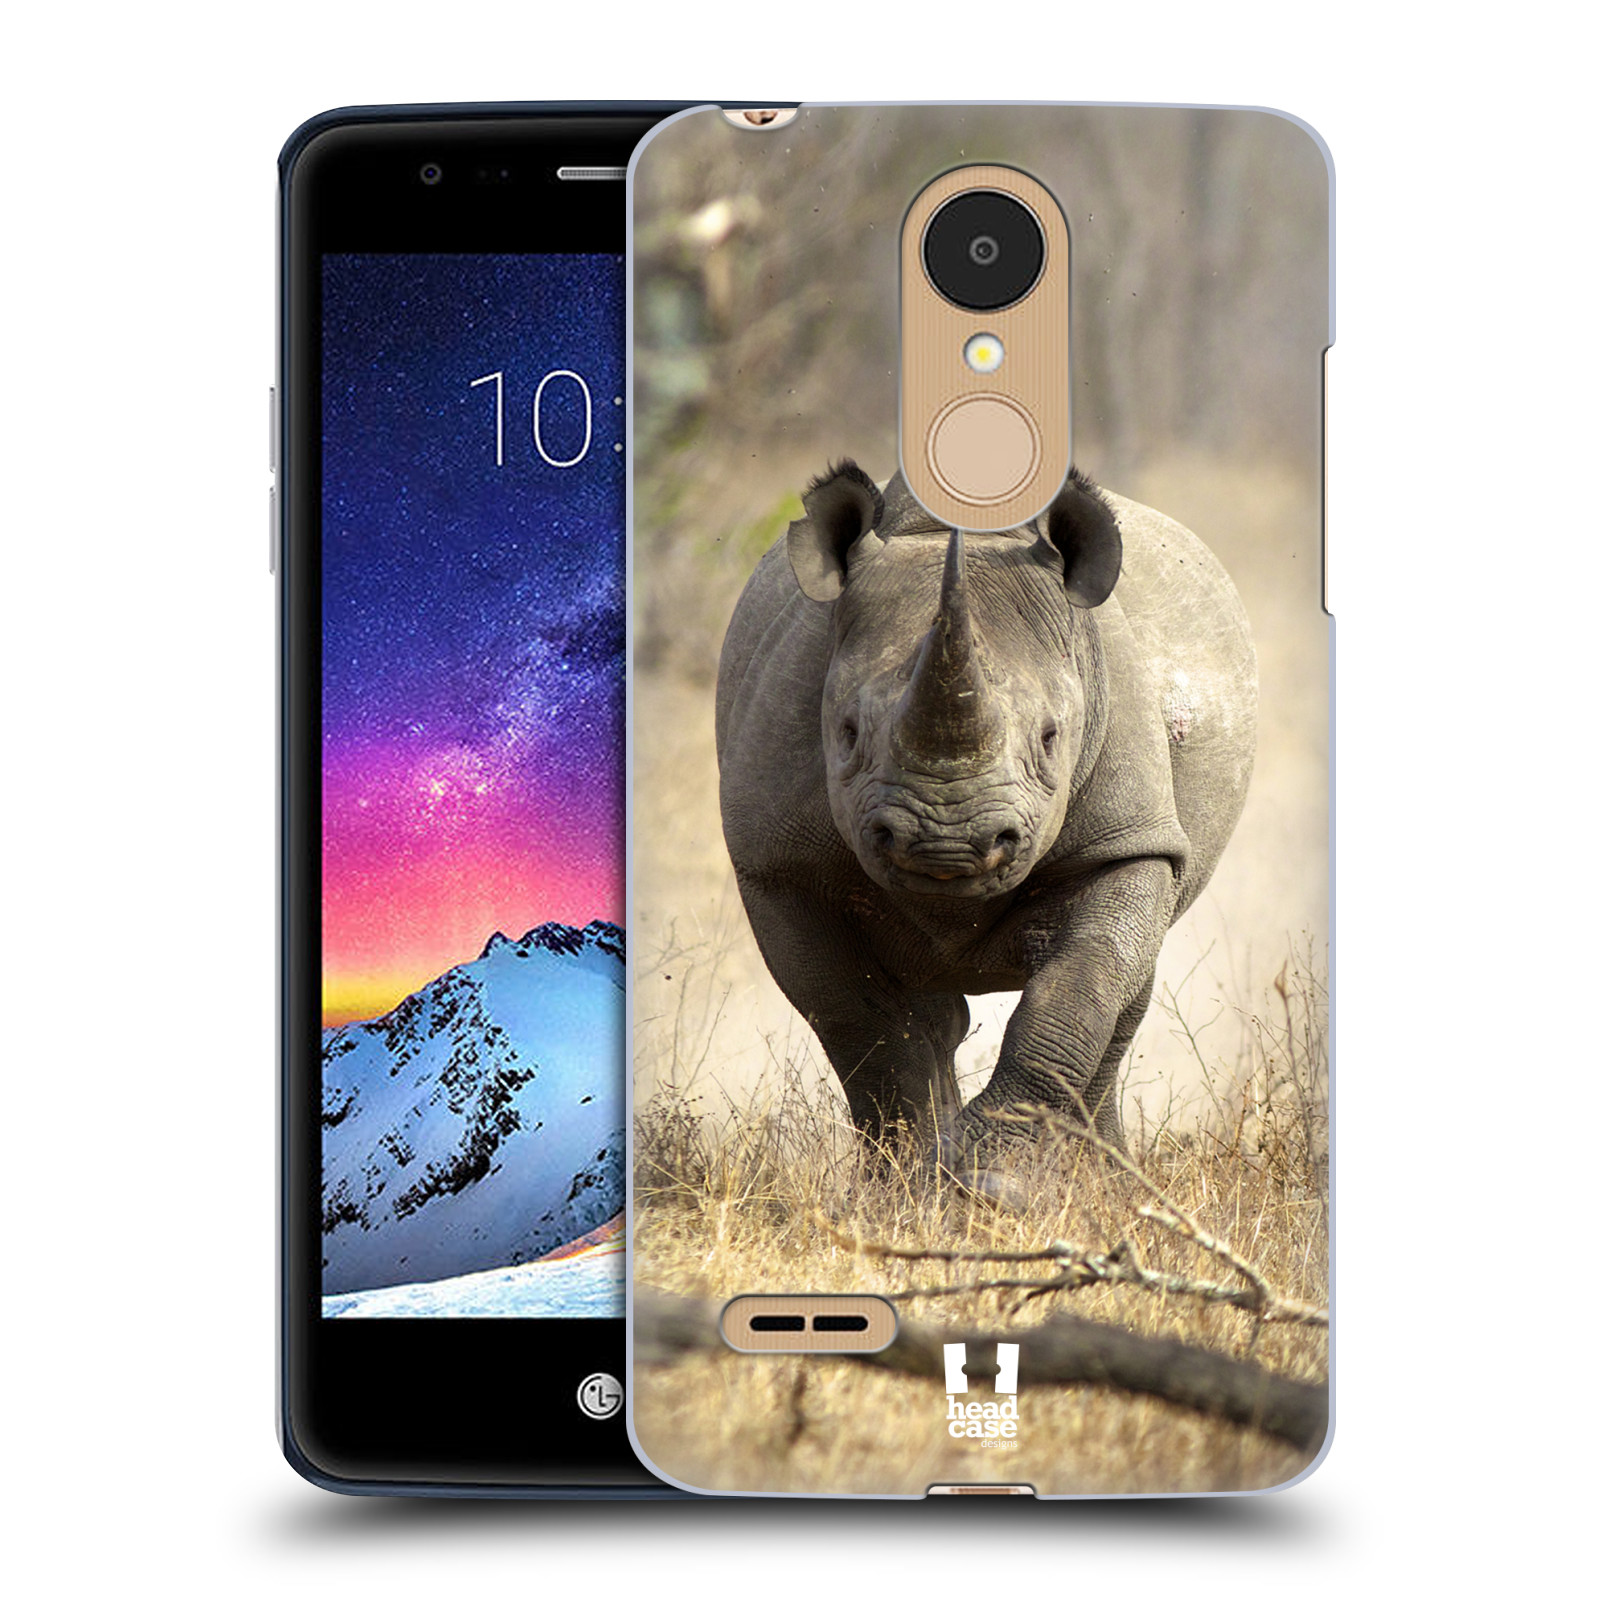 HEAD CASE plastový obal na mobil LG K9 / K8 2018 vzor Divočina, Divoký život a zvířata foto AFRIKA BĚŽÍCÍ NOSOROŽEC